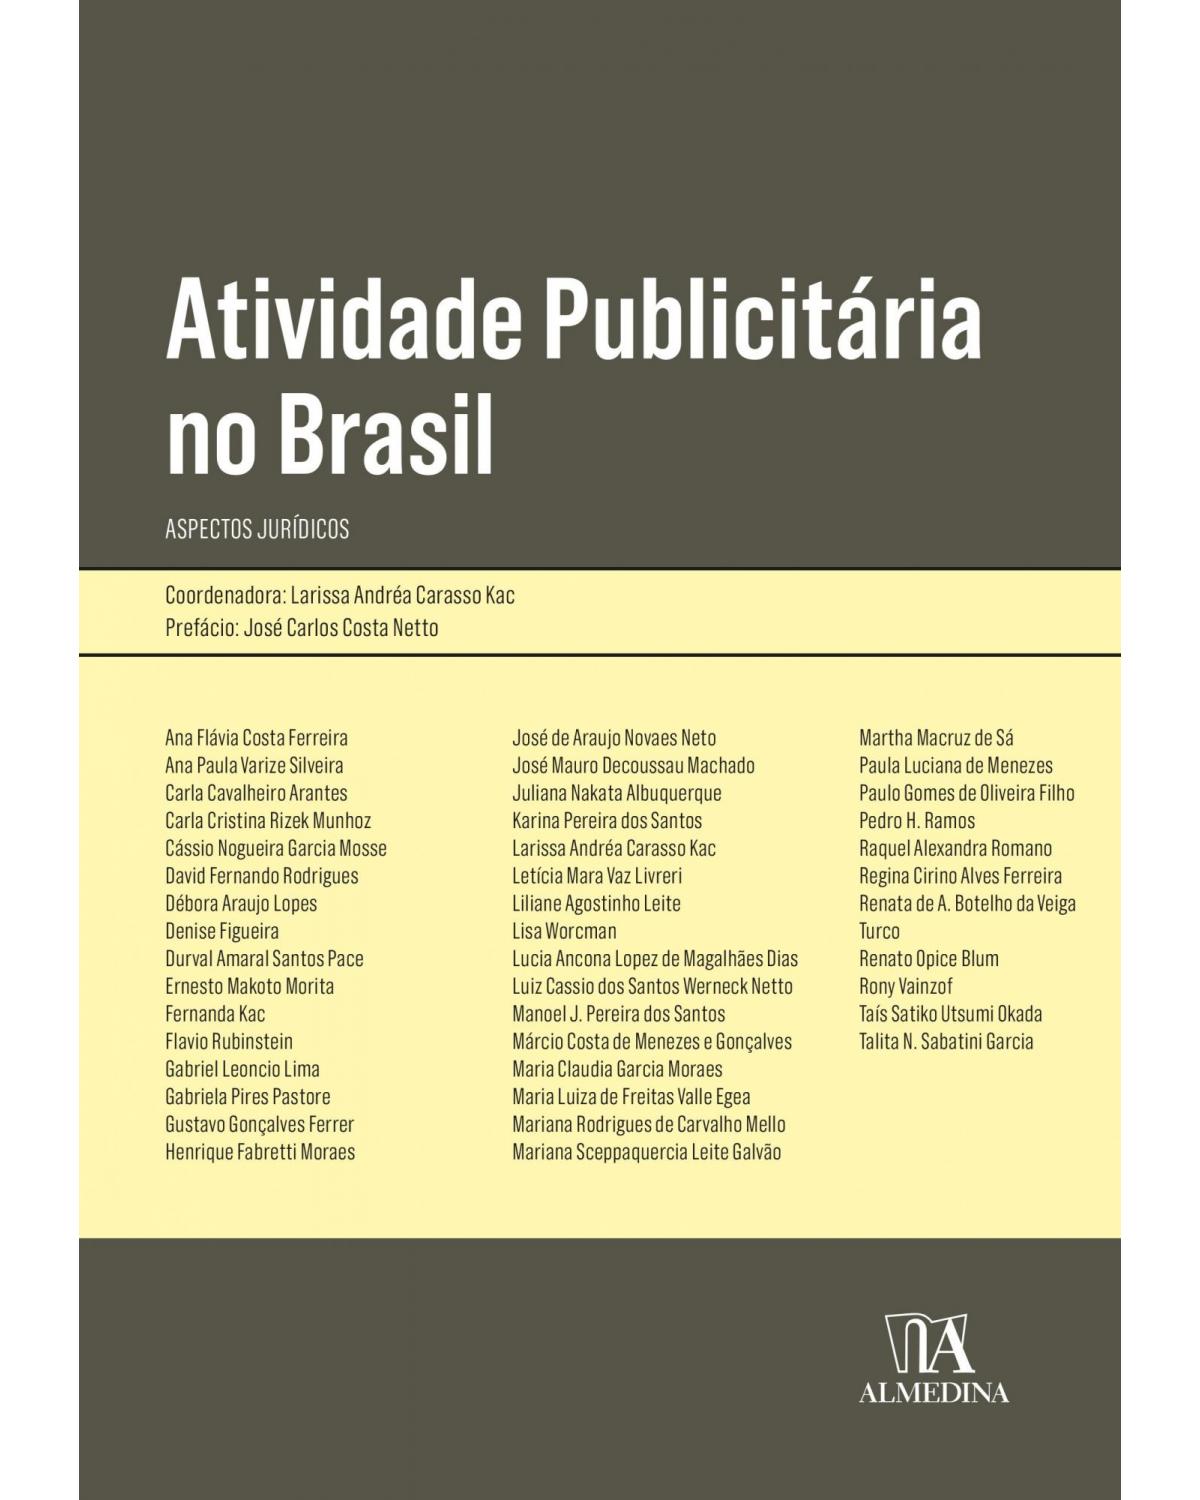 Atividade publicitária no Brasil - aspectos jurídicos - 1ª Edição | 2021